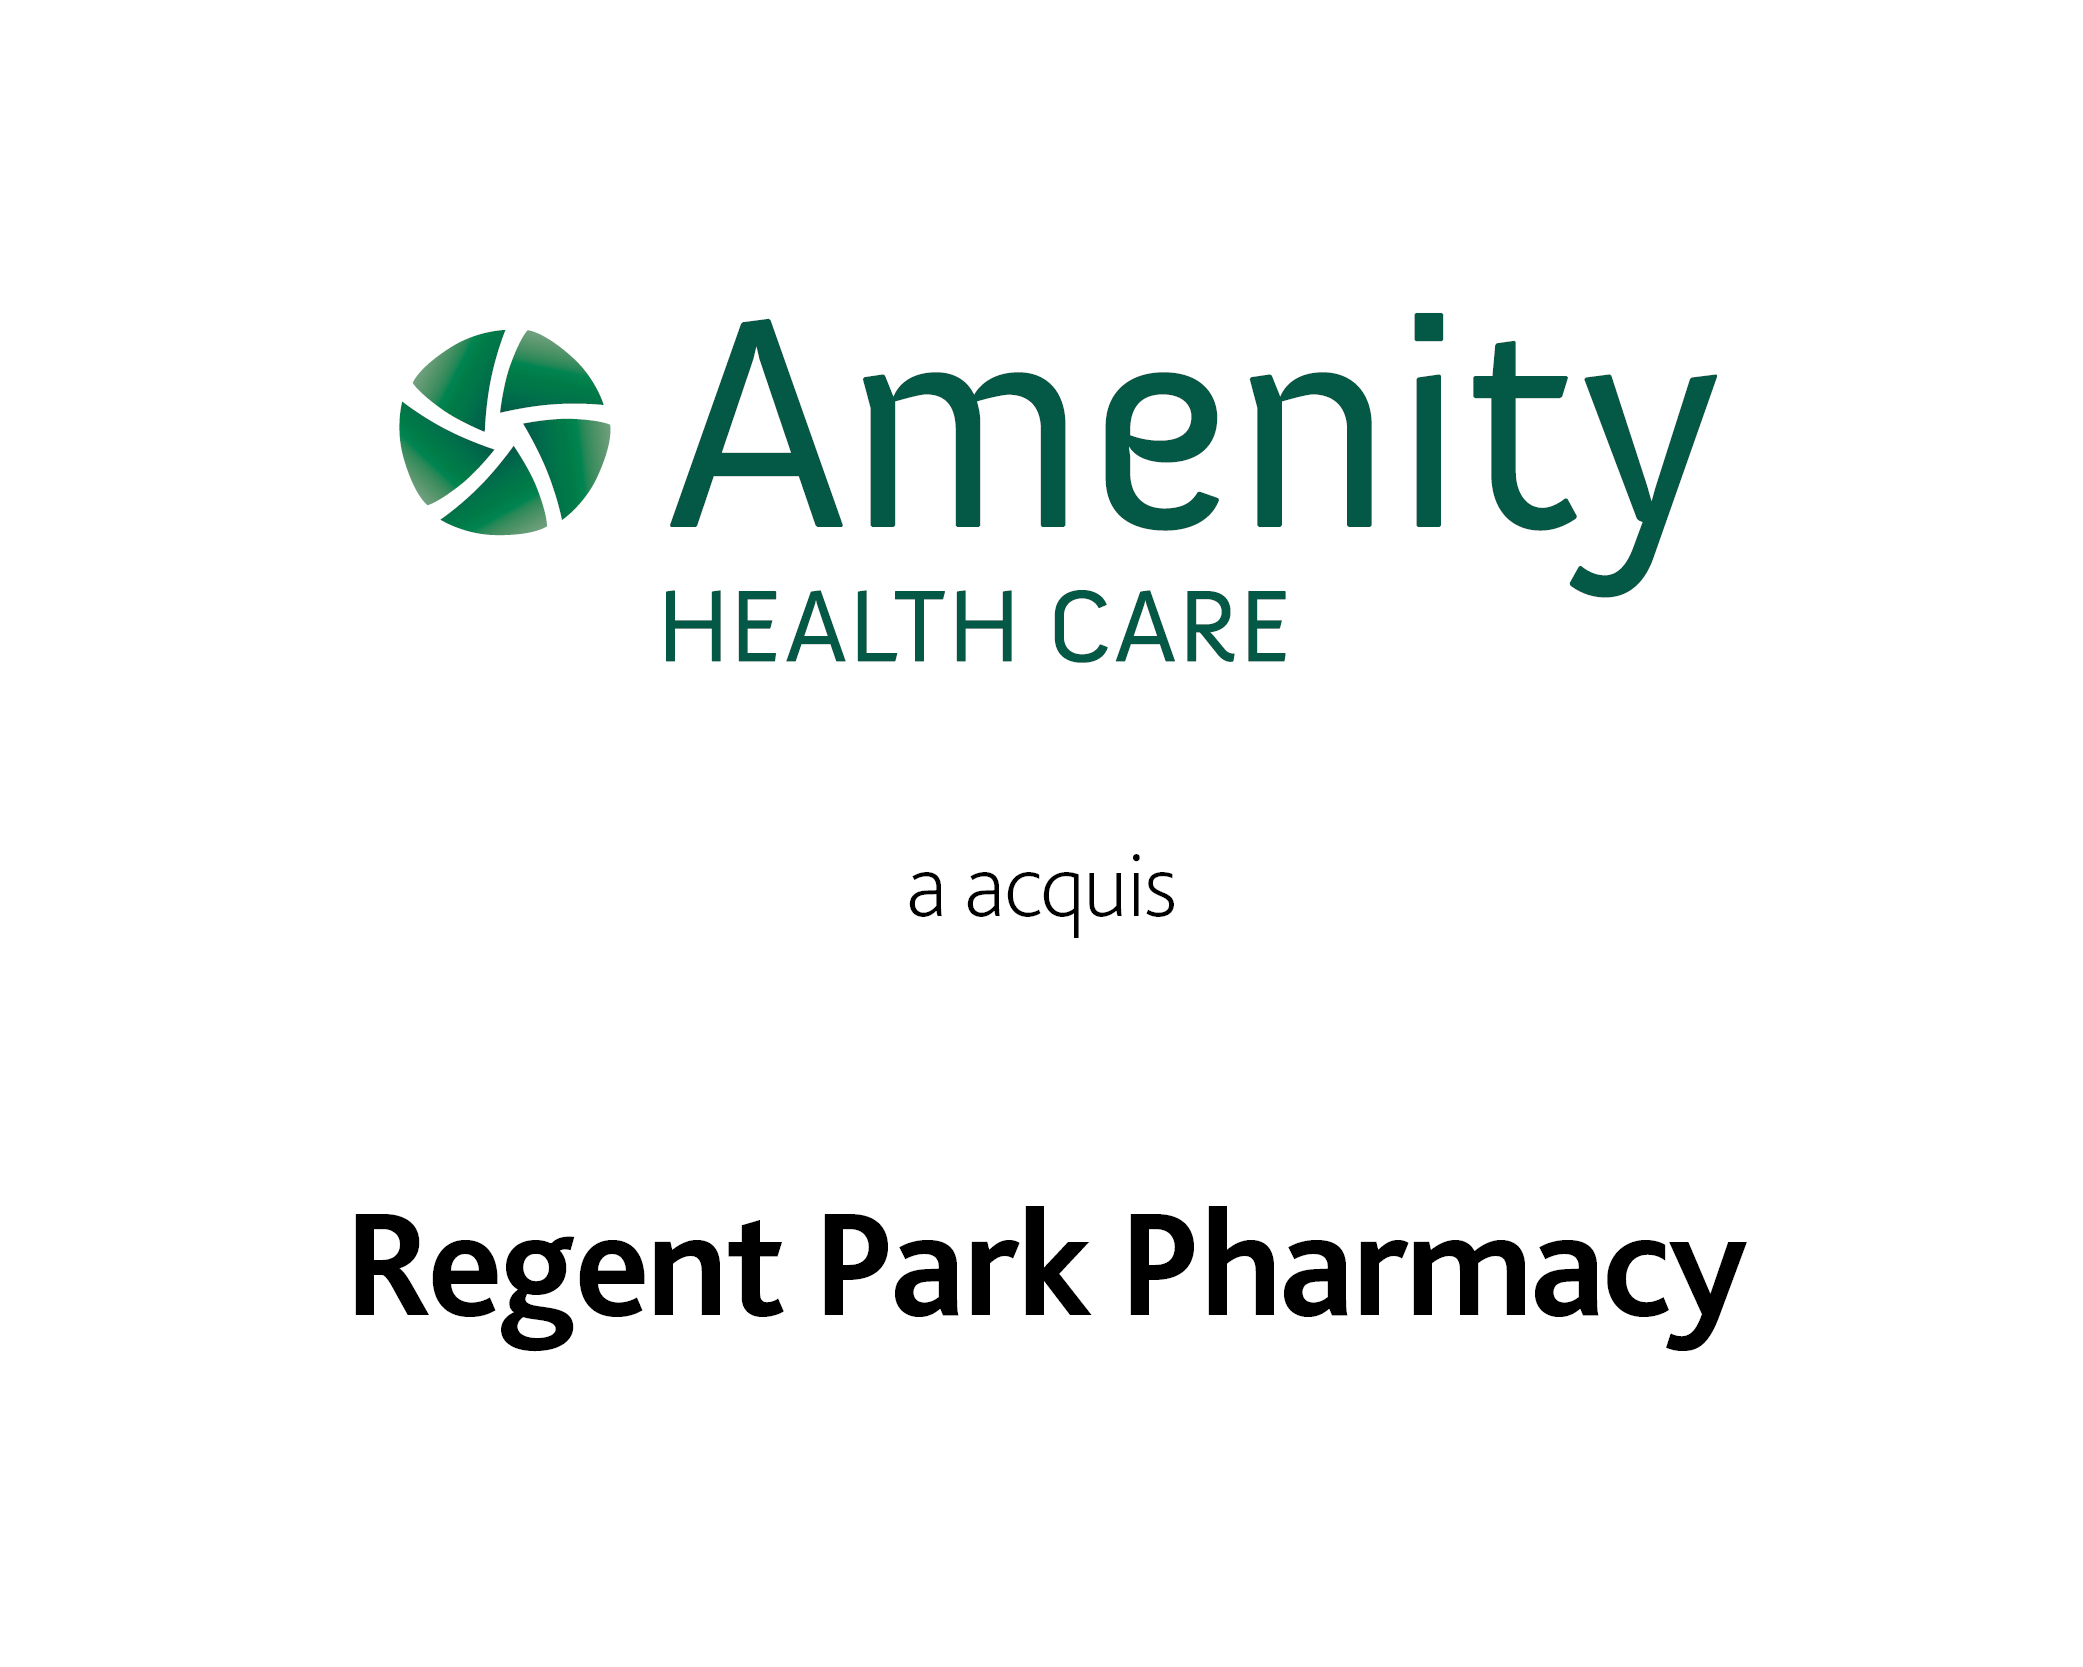 Amenity Health Care a fait l'acquisition de Regent Park Pharmacy.